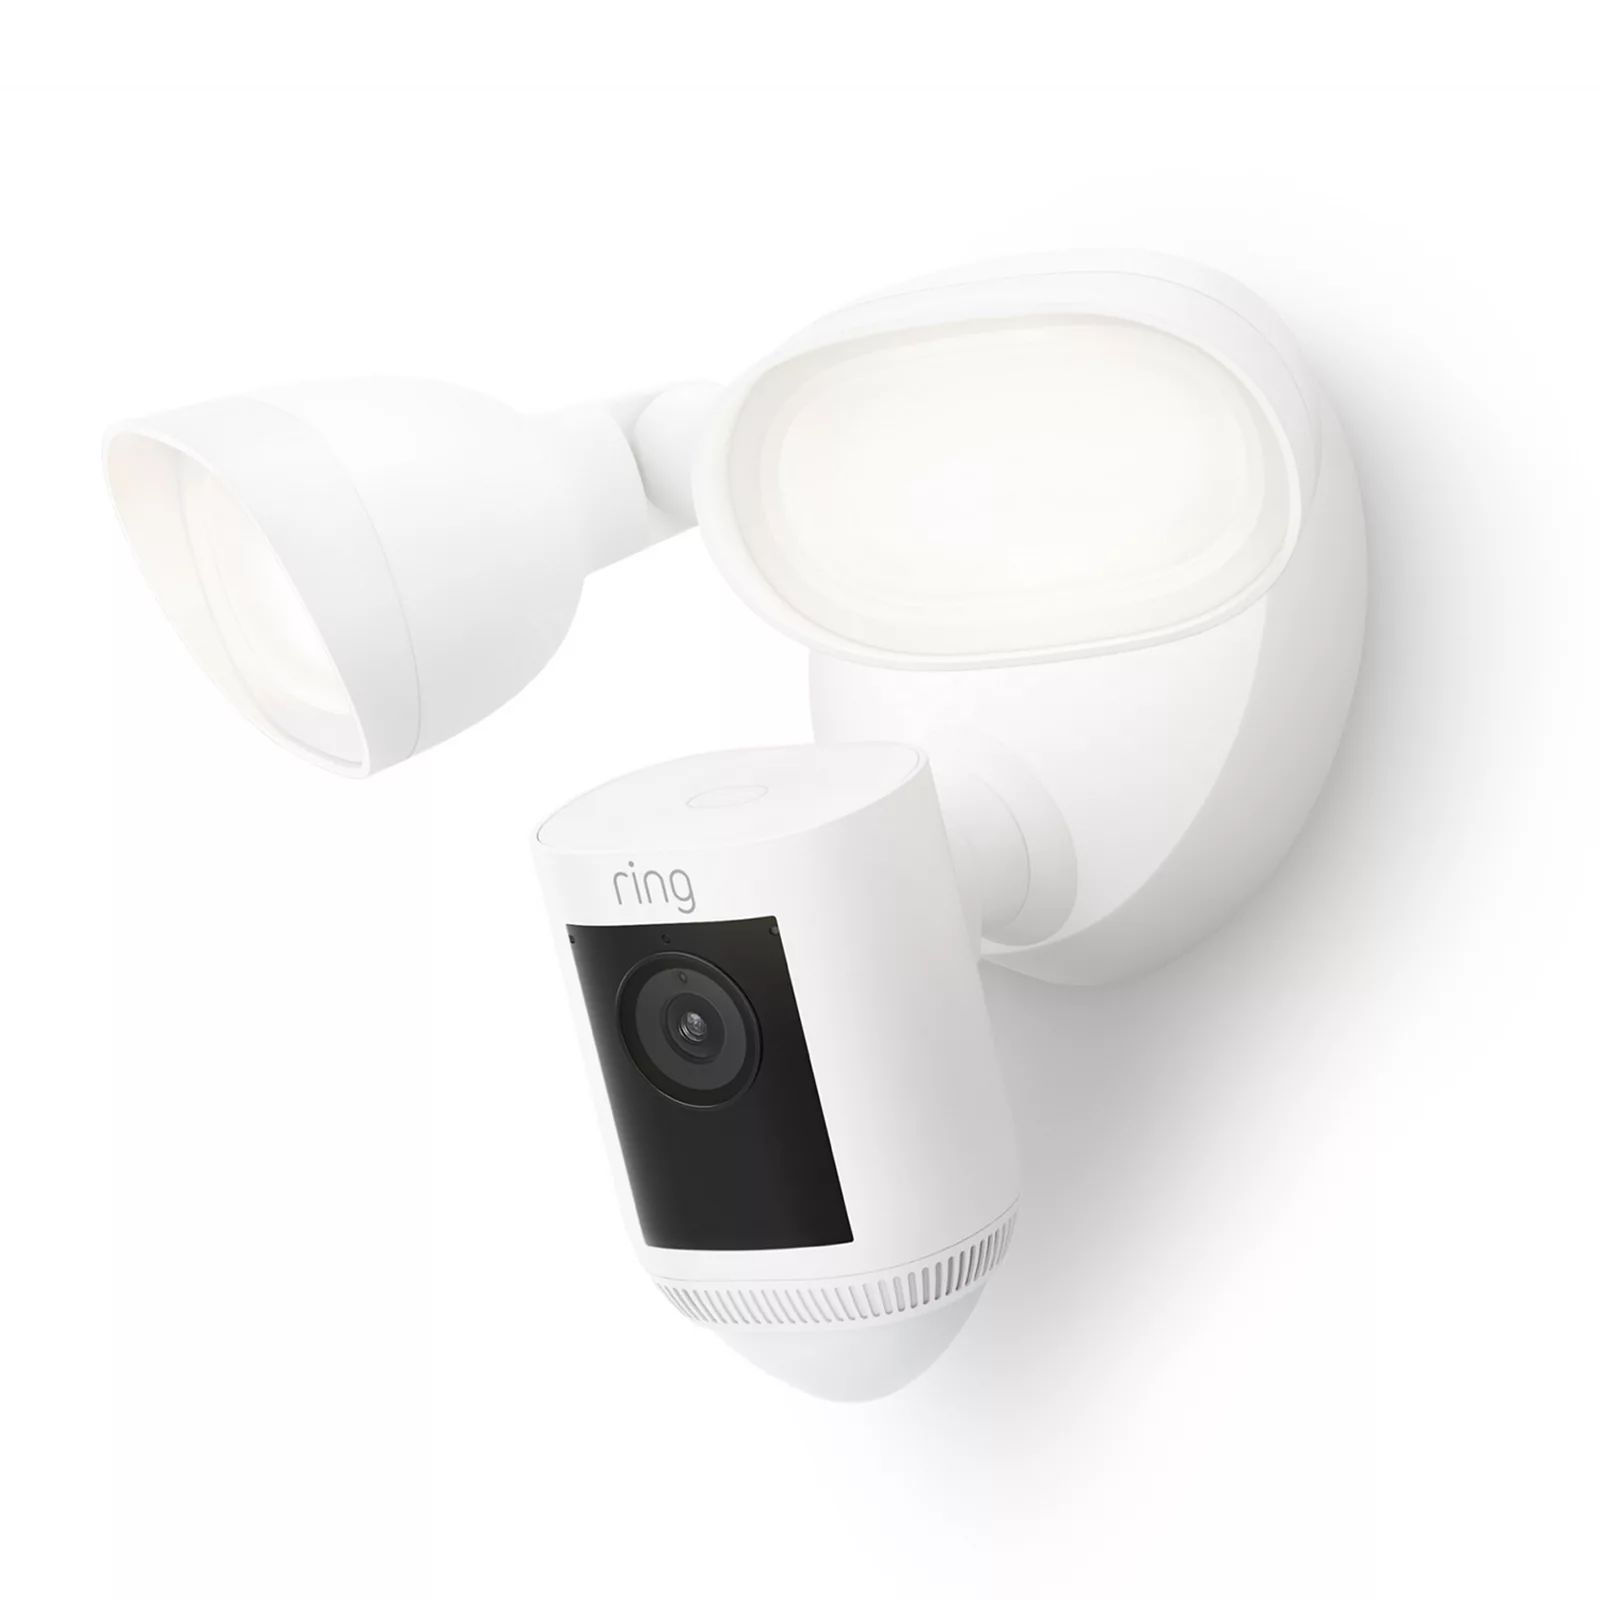 Ring Floodlight Cam Pro, White | Kohl's